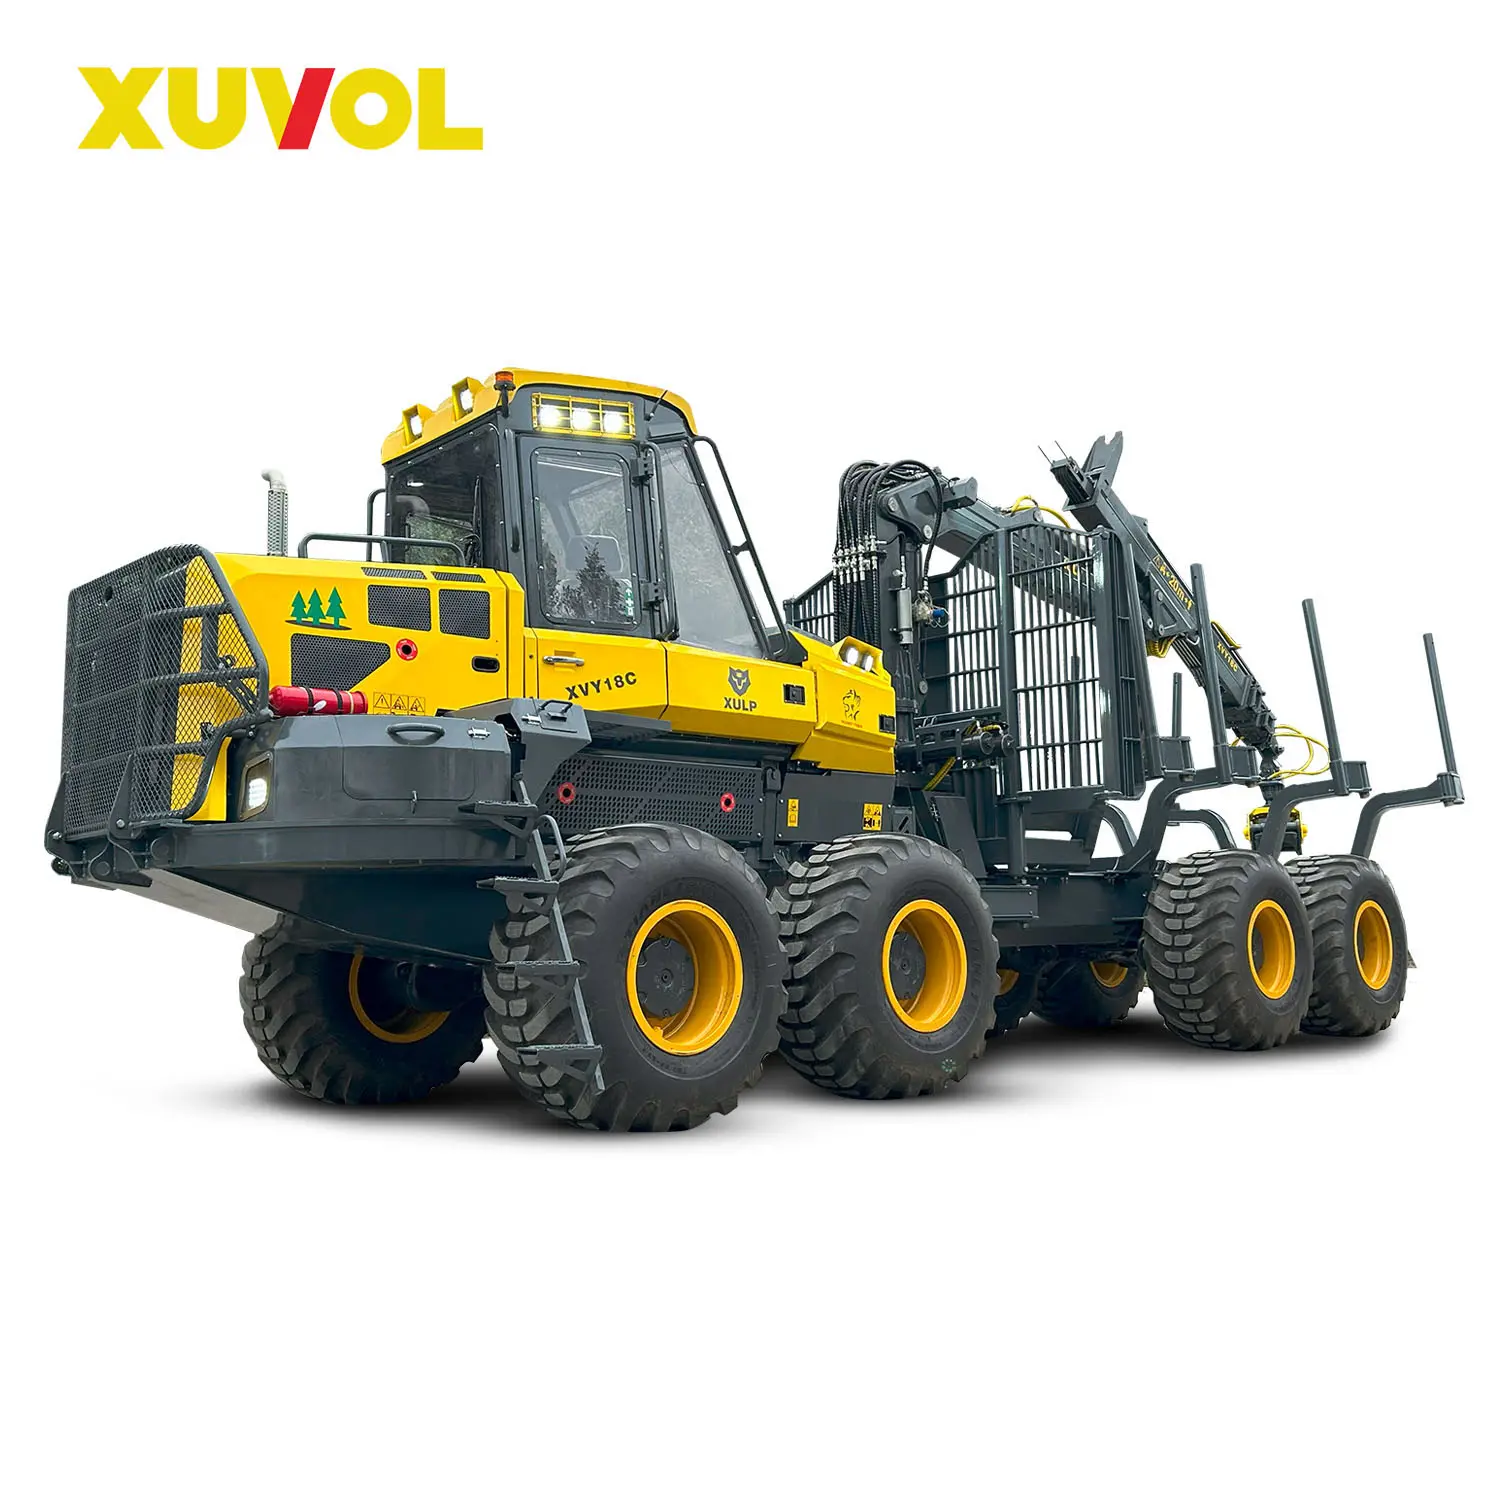 XUVOL XVY18C รวมสะสมไม้การขนส่ง 18t ป่าไม้ผู้ส่งของรถพ่วงไม้ฟืนเครนล็อกคว้า